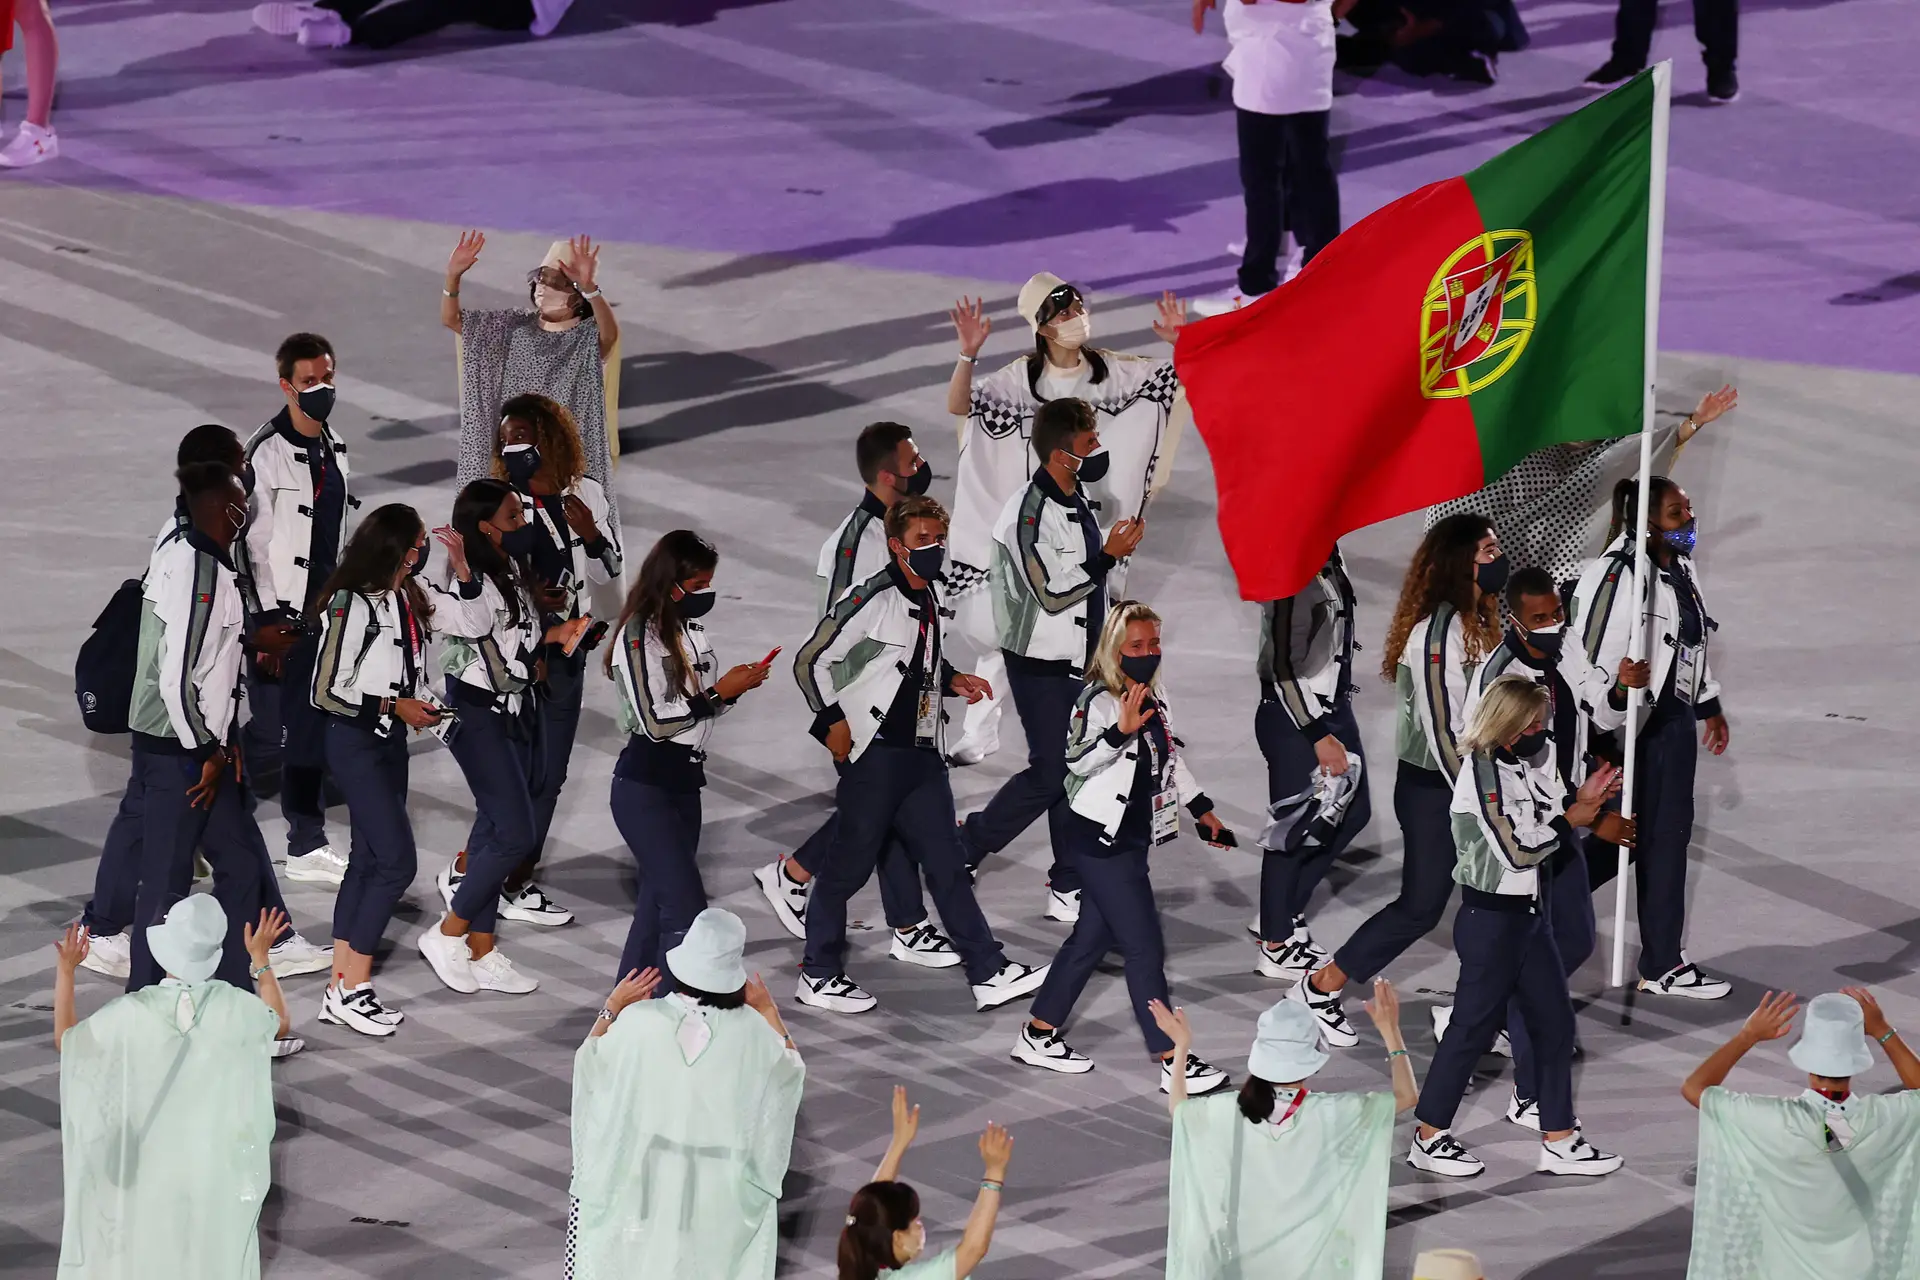 As contas que deixam Portugal fora dos Jogos Olímpicos no futebol